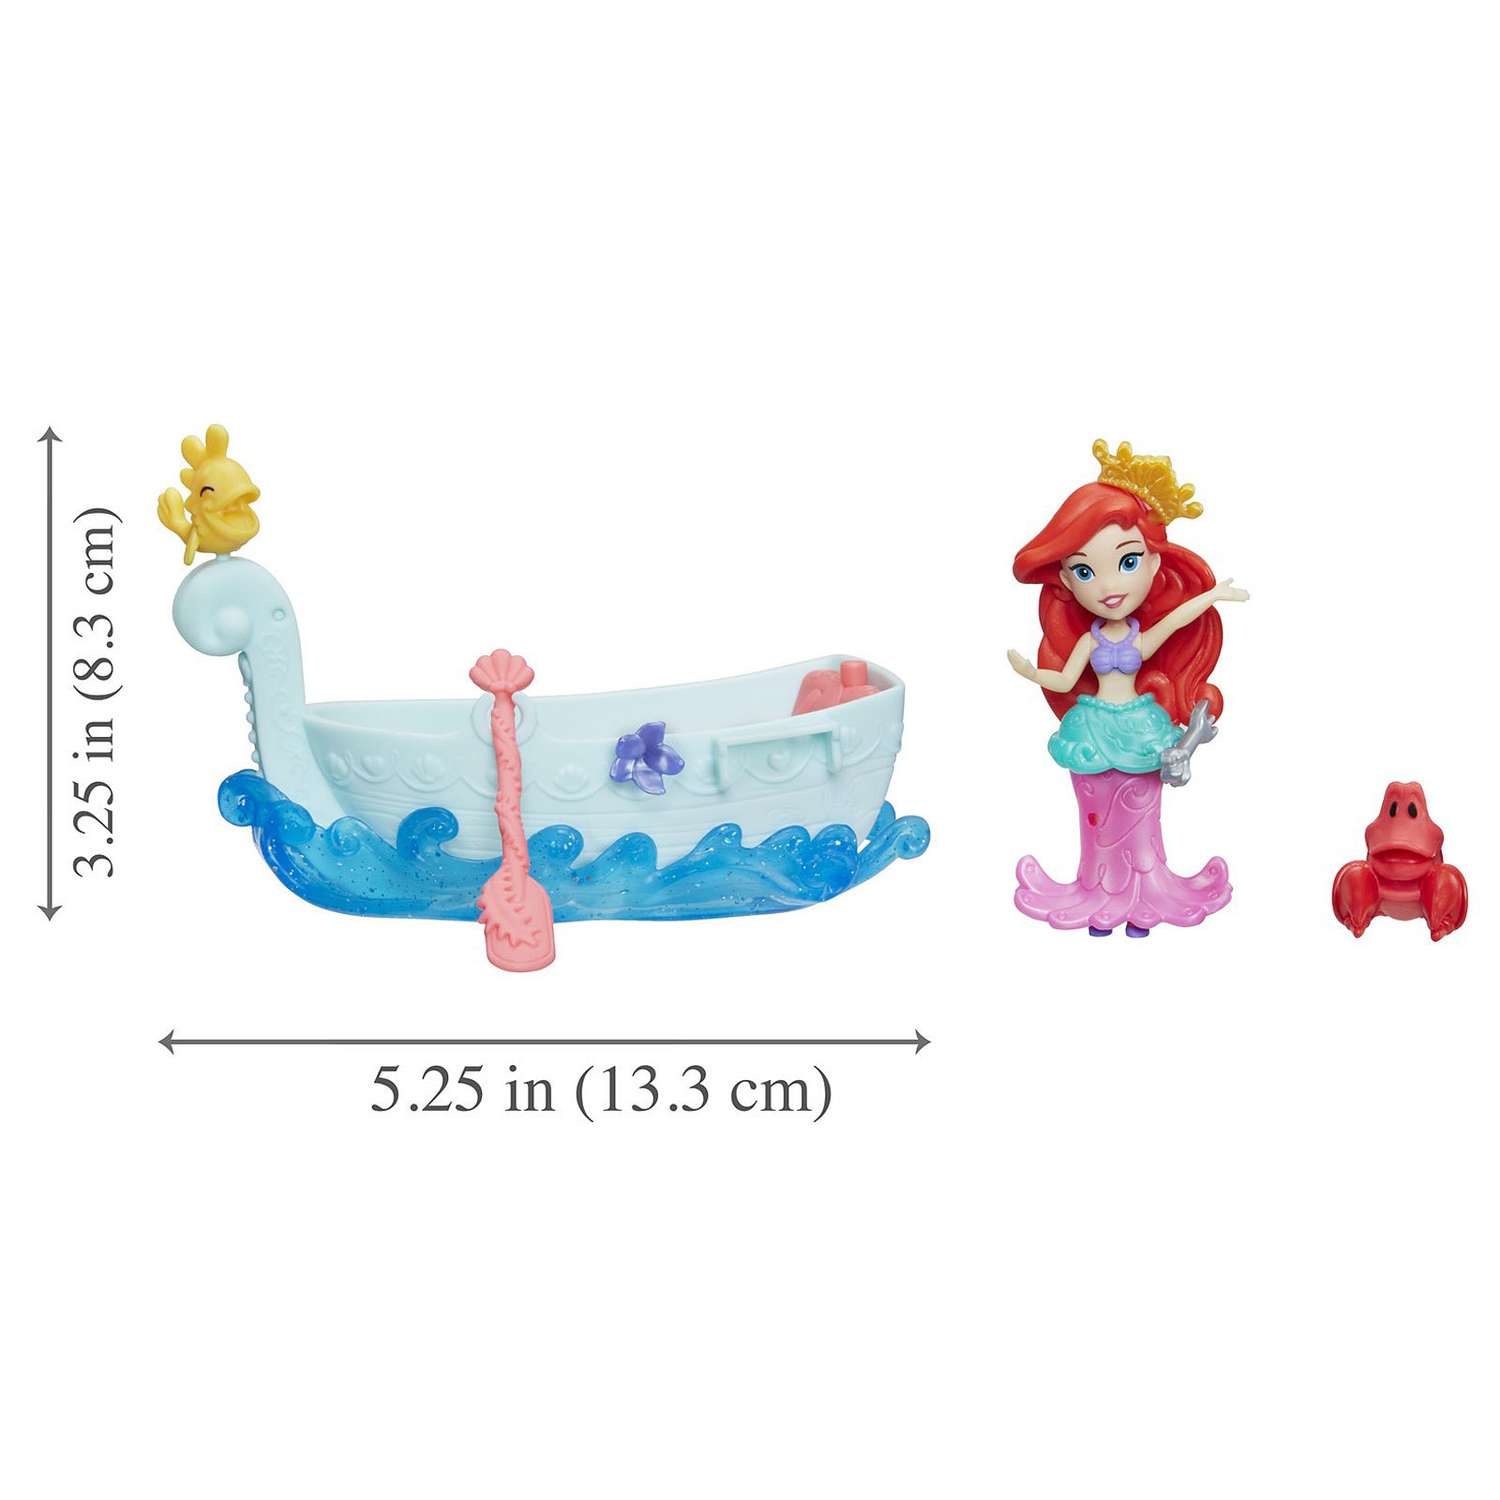 Набор Princess Disney Фигурка и лодка в ассортименте E0068EU4 E0068EU4 - фото 18